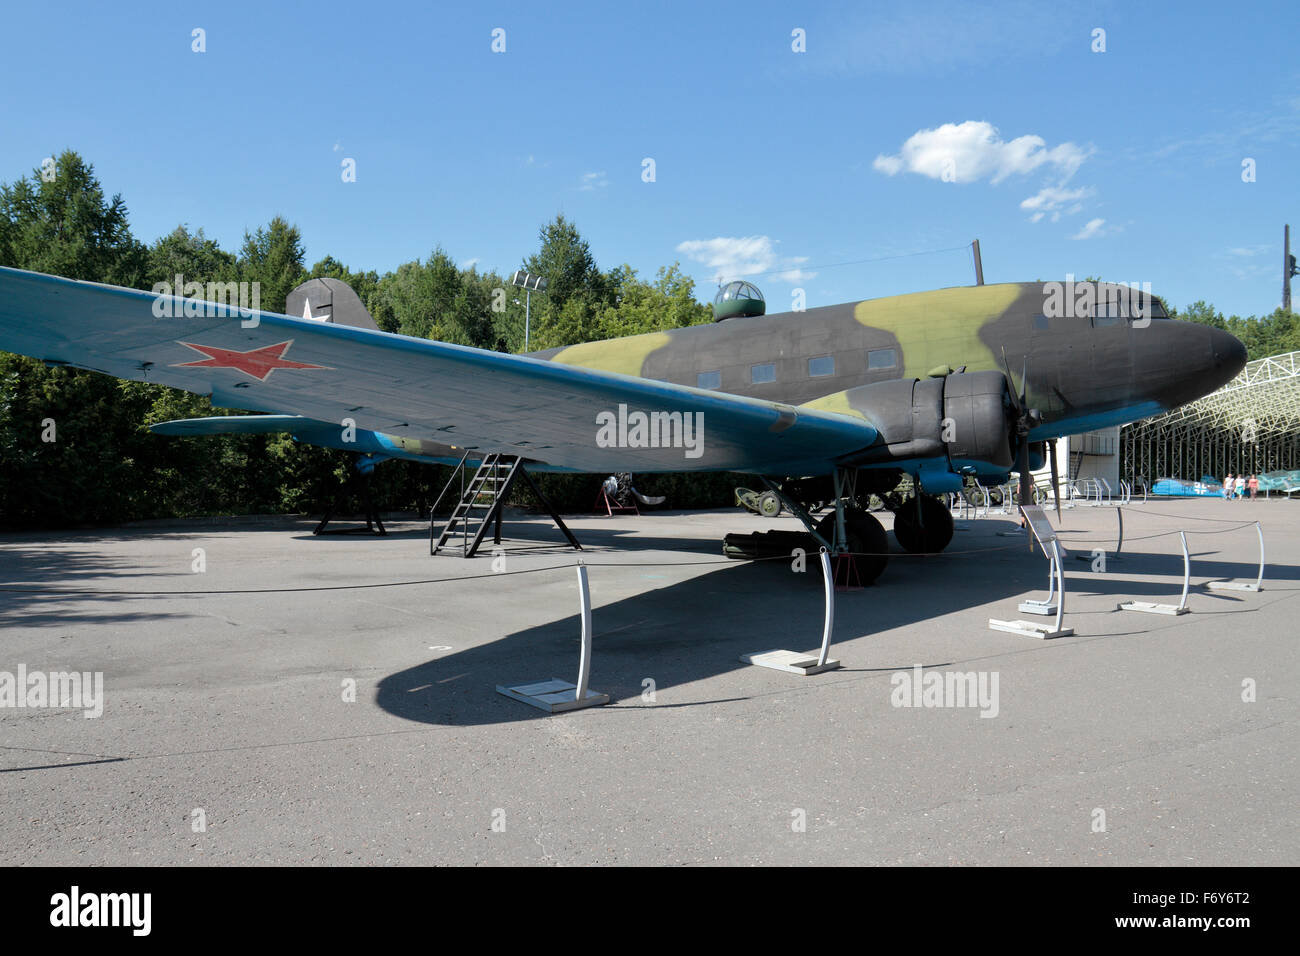 Li-2 soviétique d'un avion de transport militaire de la DEUXIÈME GUERRE MONDIALE dans l'Exposition de matériel militaire dans la région de Park Pobedy, Moscou, Russie. Banque D'Images